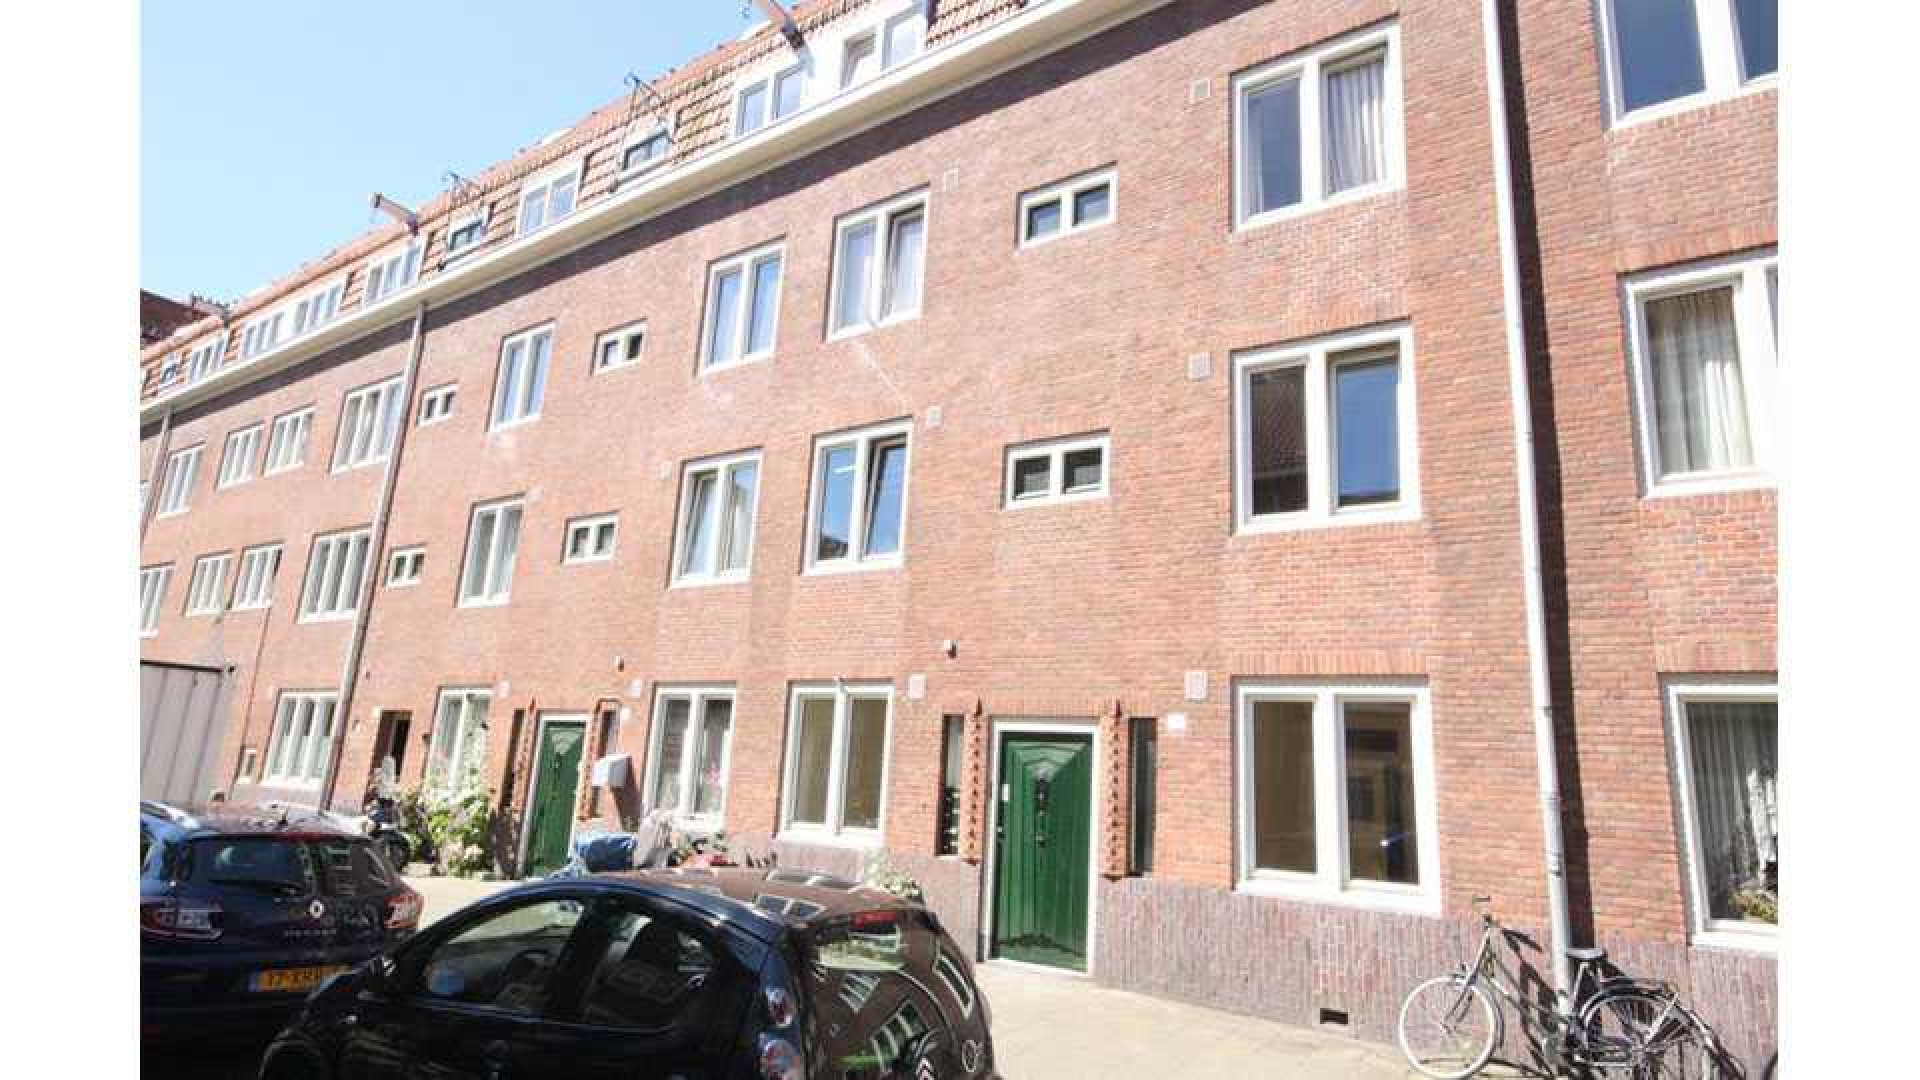 Kluun betaalt dik boven de vraagprijs voor woning in de Amsterdamse De Pijp. Zie foto's 3